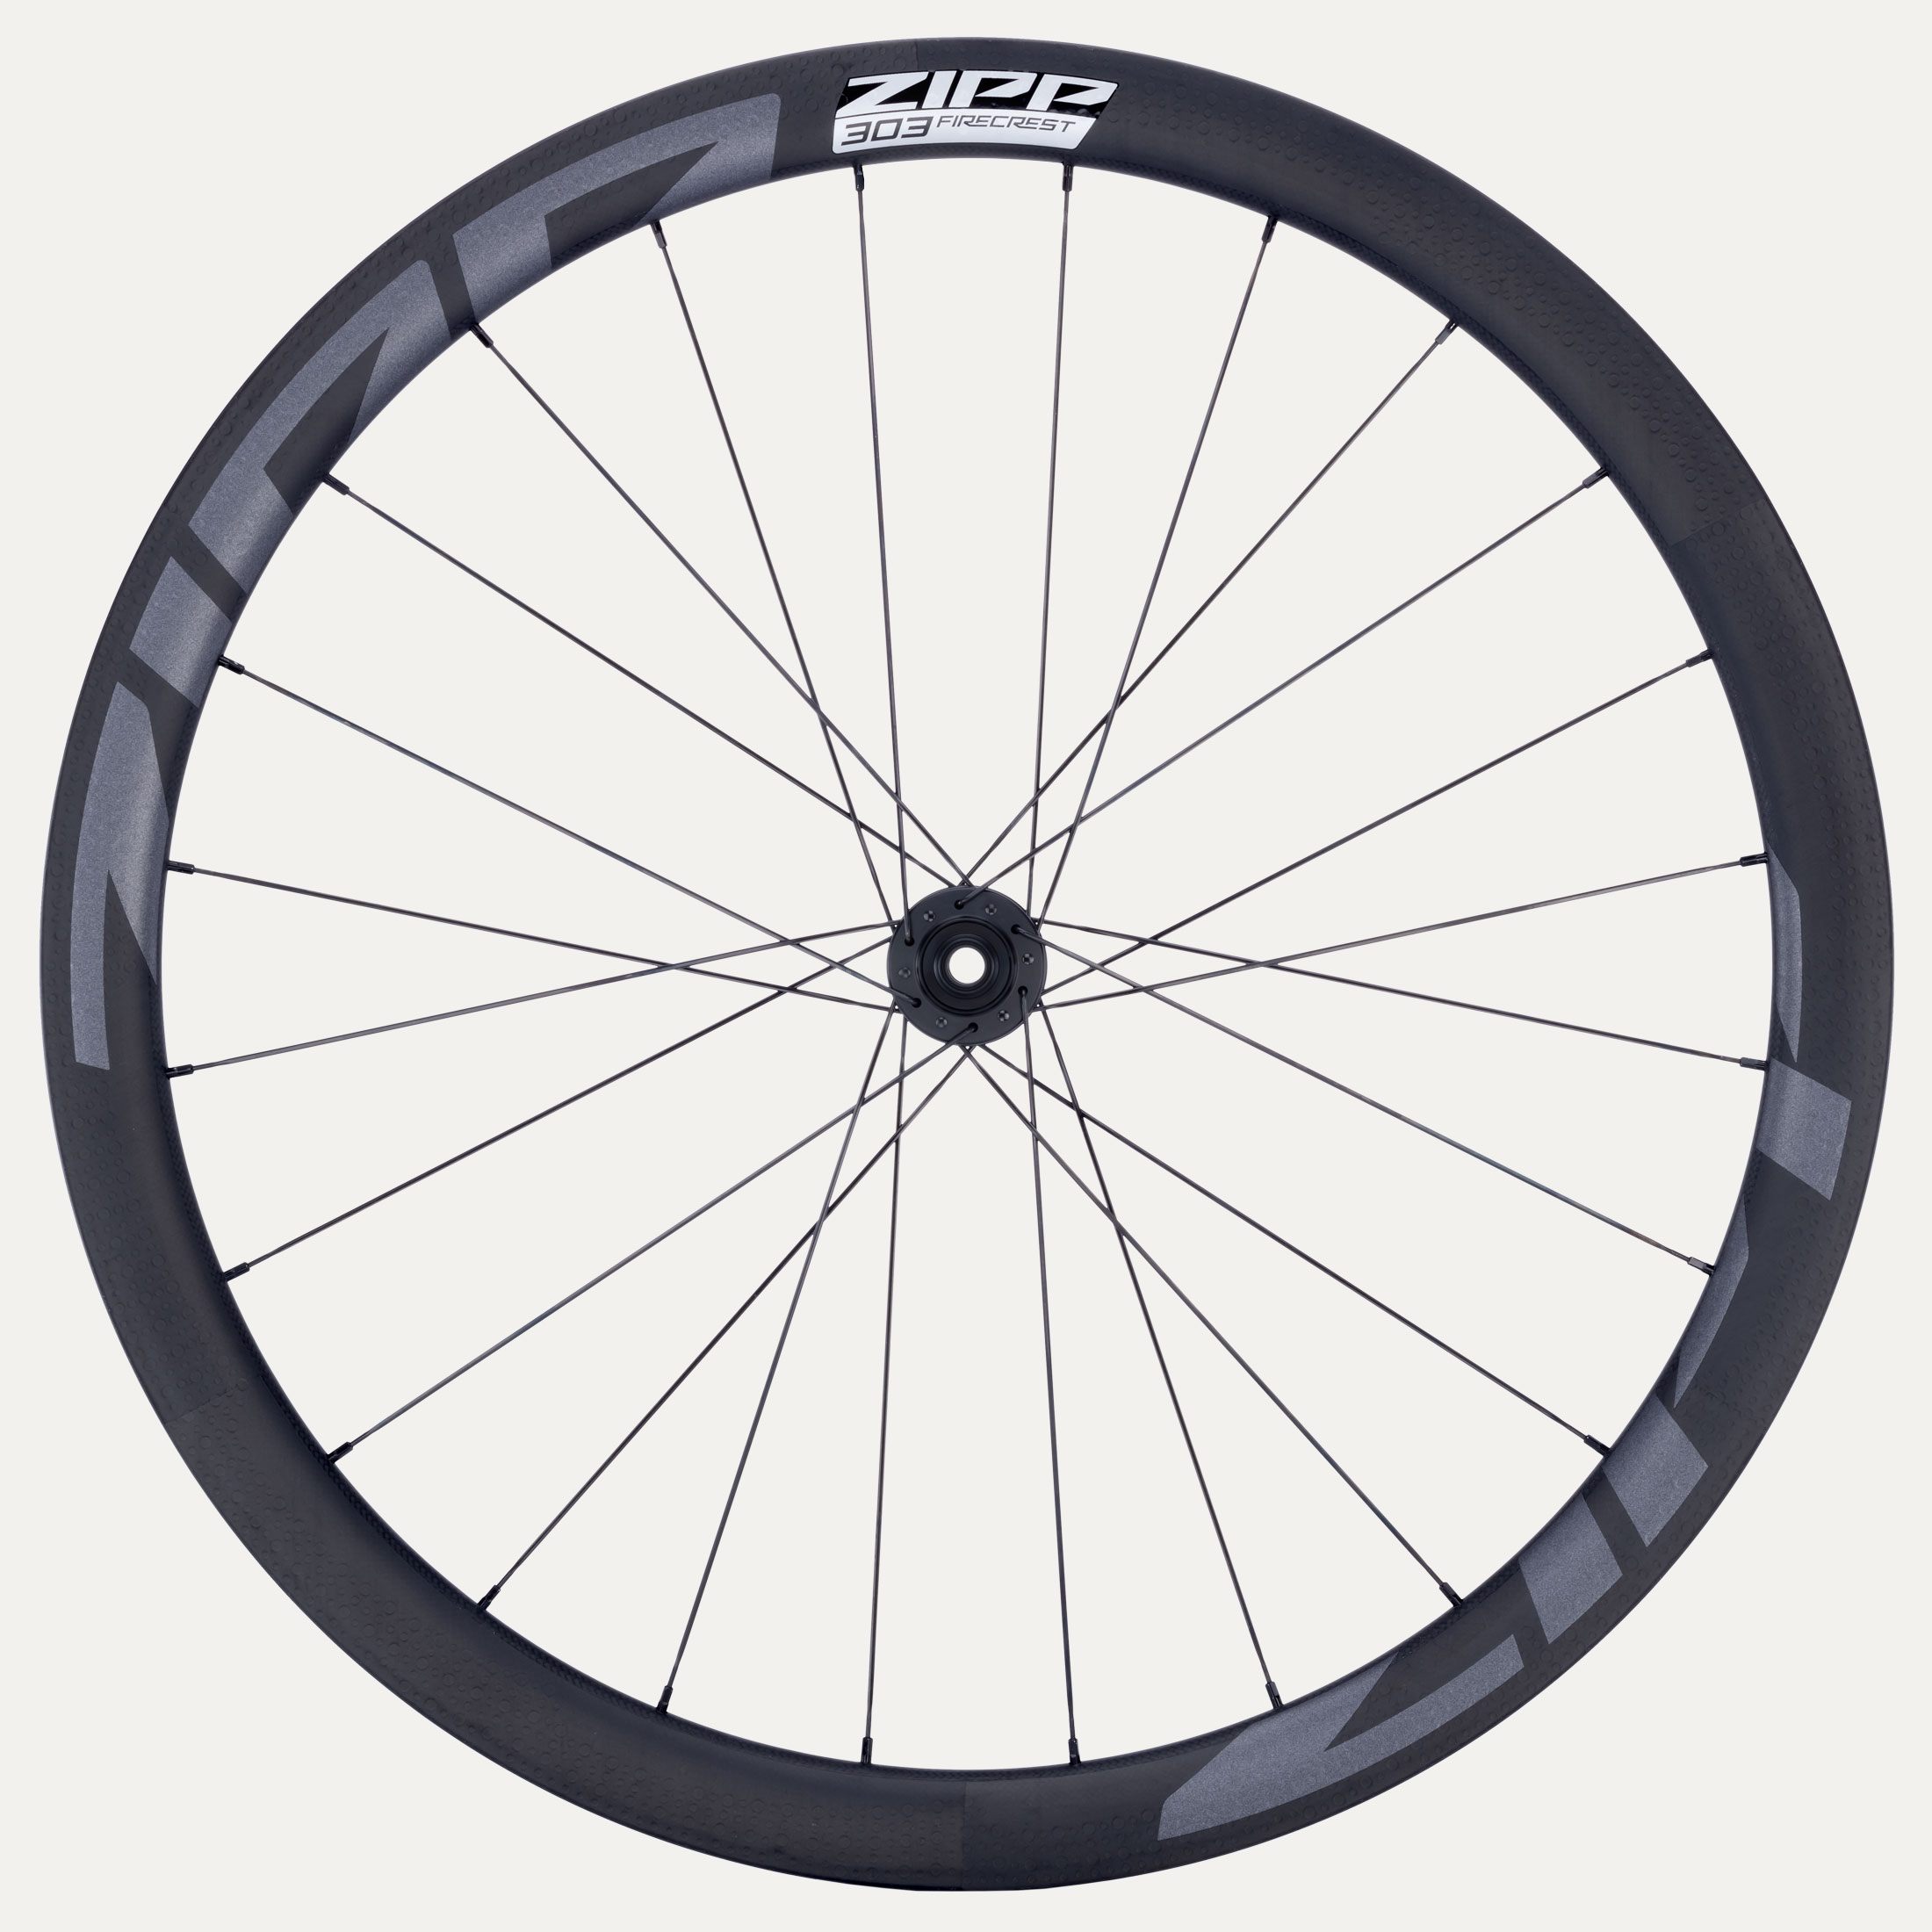 Updated Zipp 303 Firecrest Wheels Announced